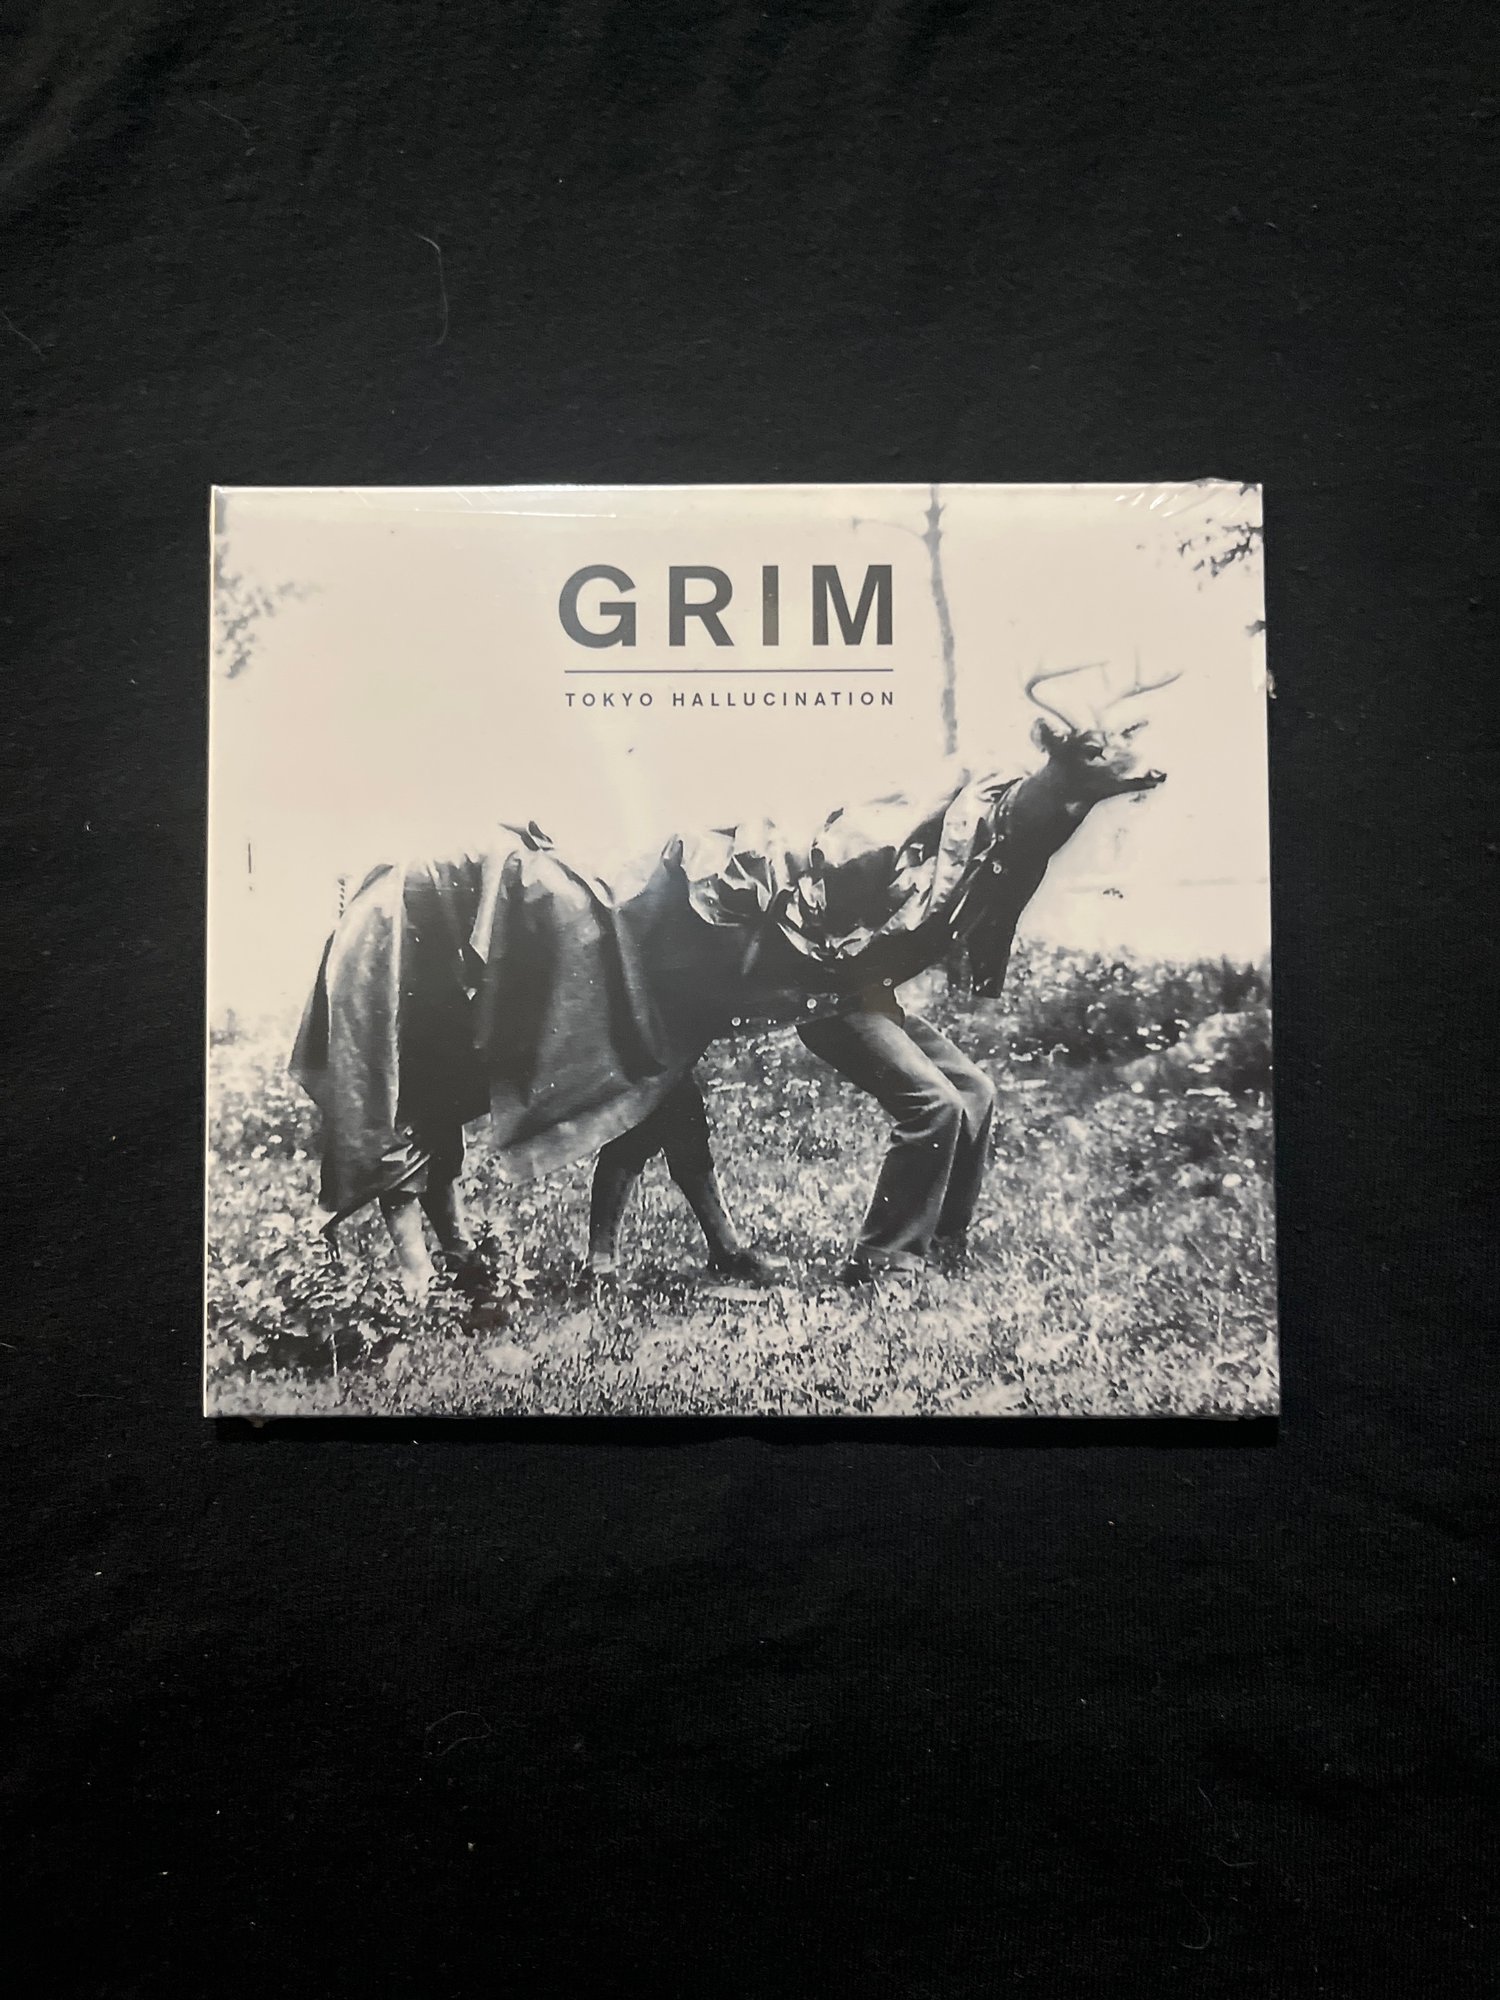 Grim - Tokyo Hallucination CD (OEC)